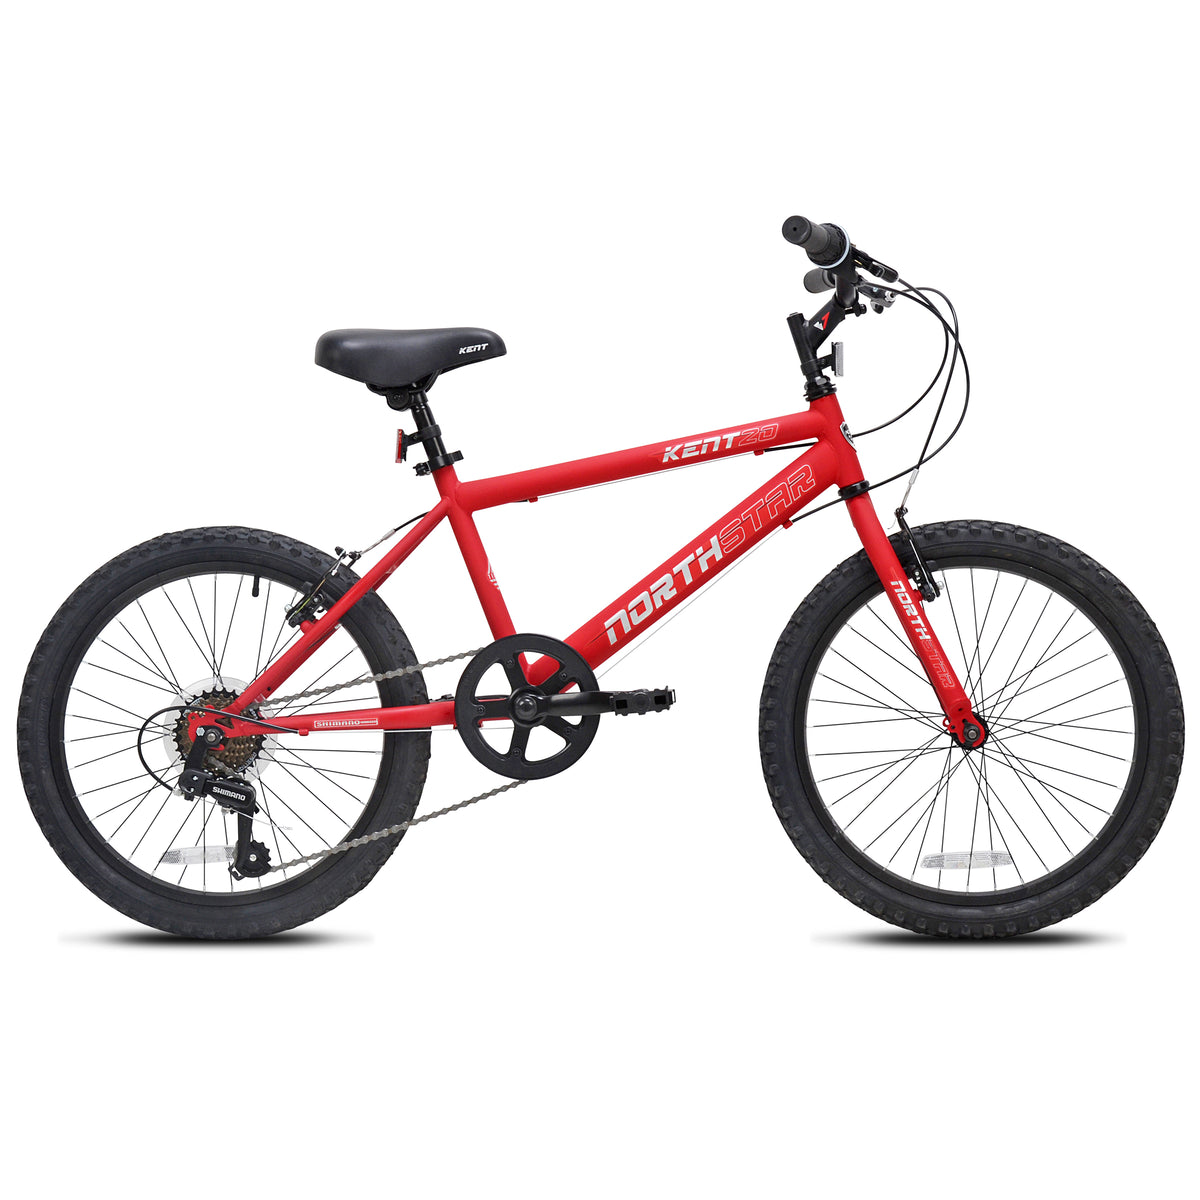 20" Kent Northstar | Bike for Kids Ages 7-13